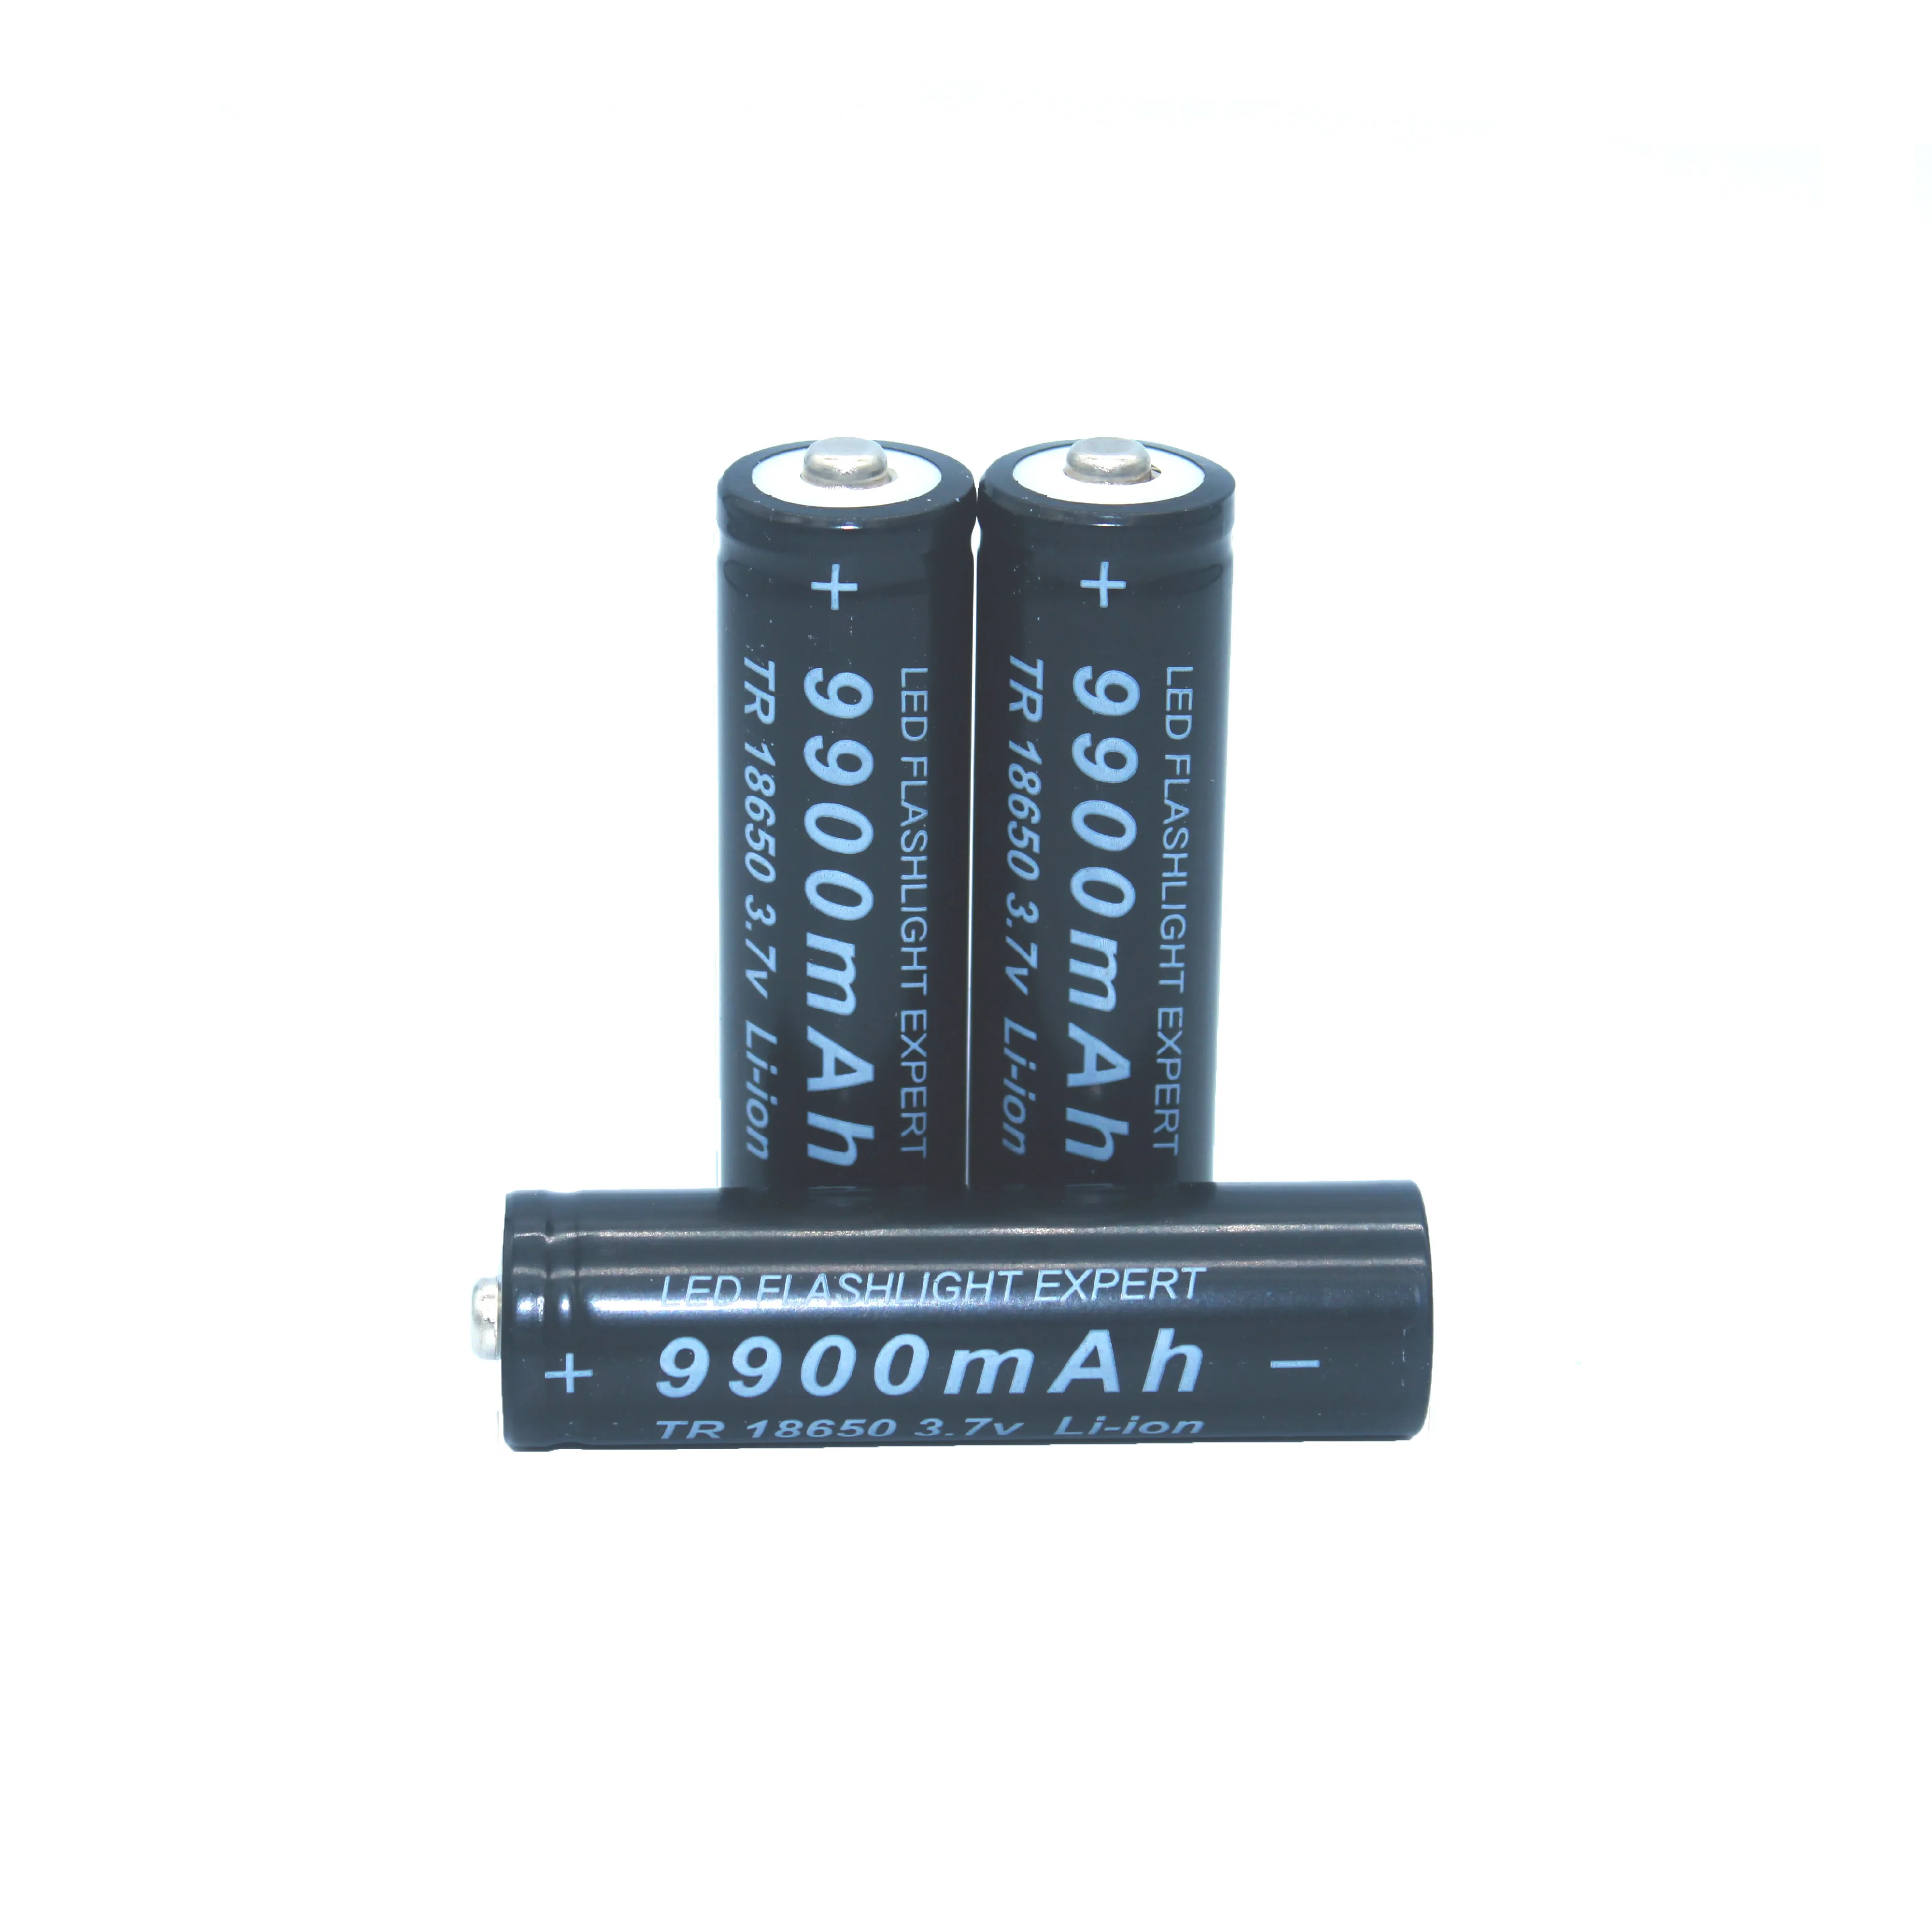 18650 bateria de alta qualidade 9900 mah 3.7 v 18650 baterias li-ion bateria recarregavel para lanterna tocha + frete už dyką 1